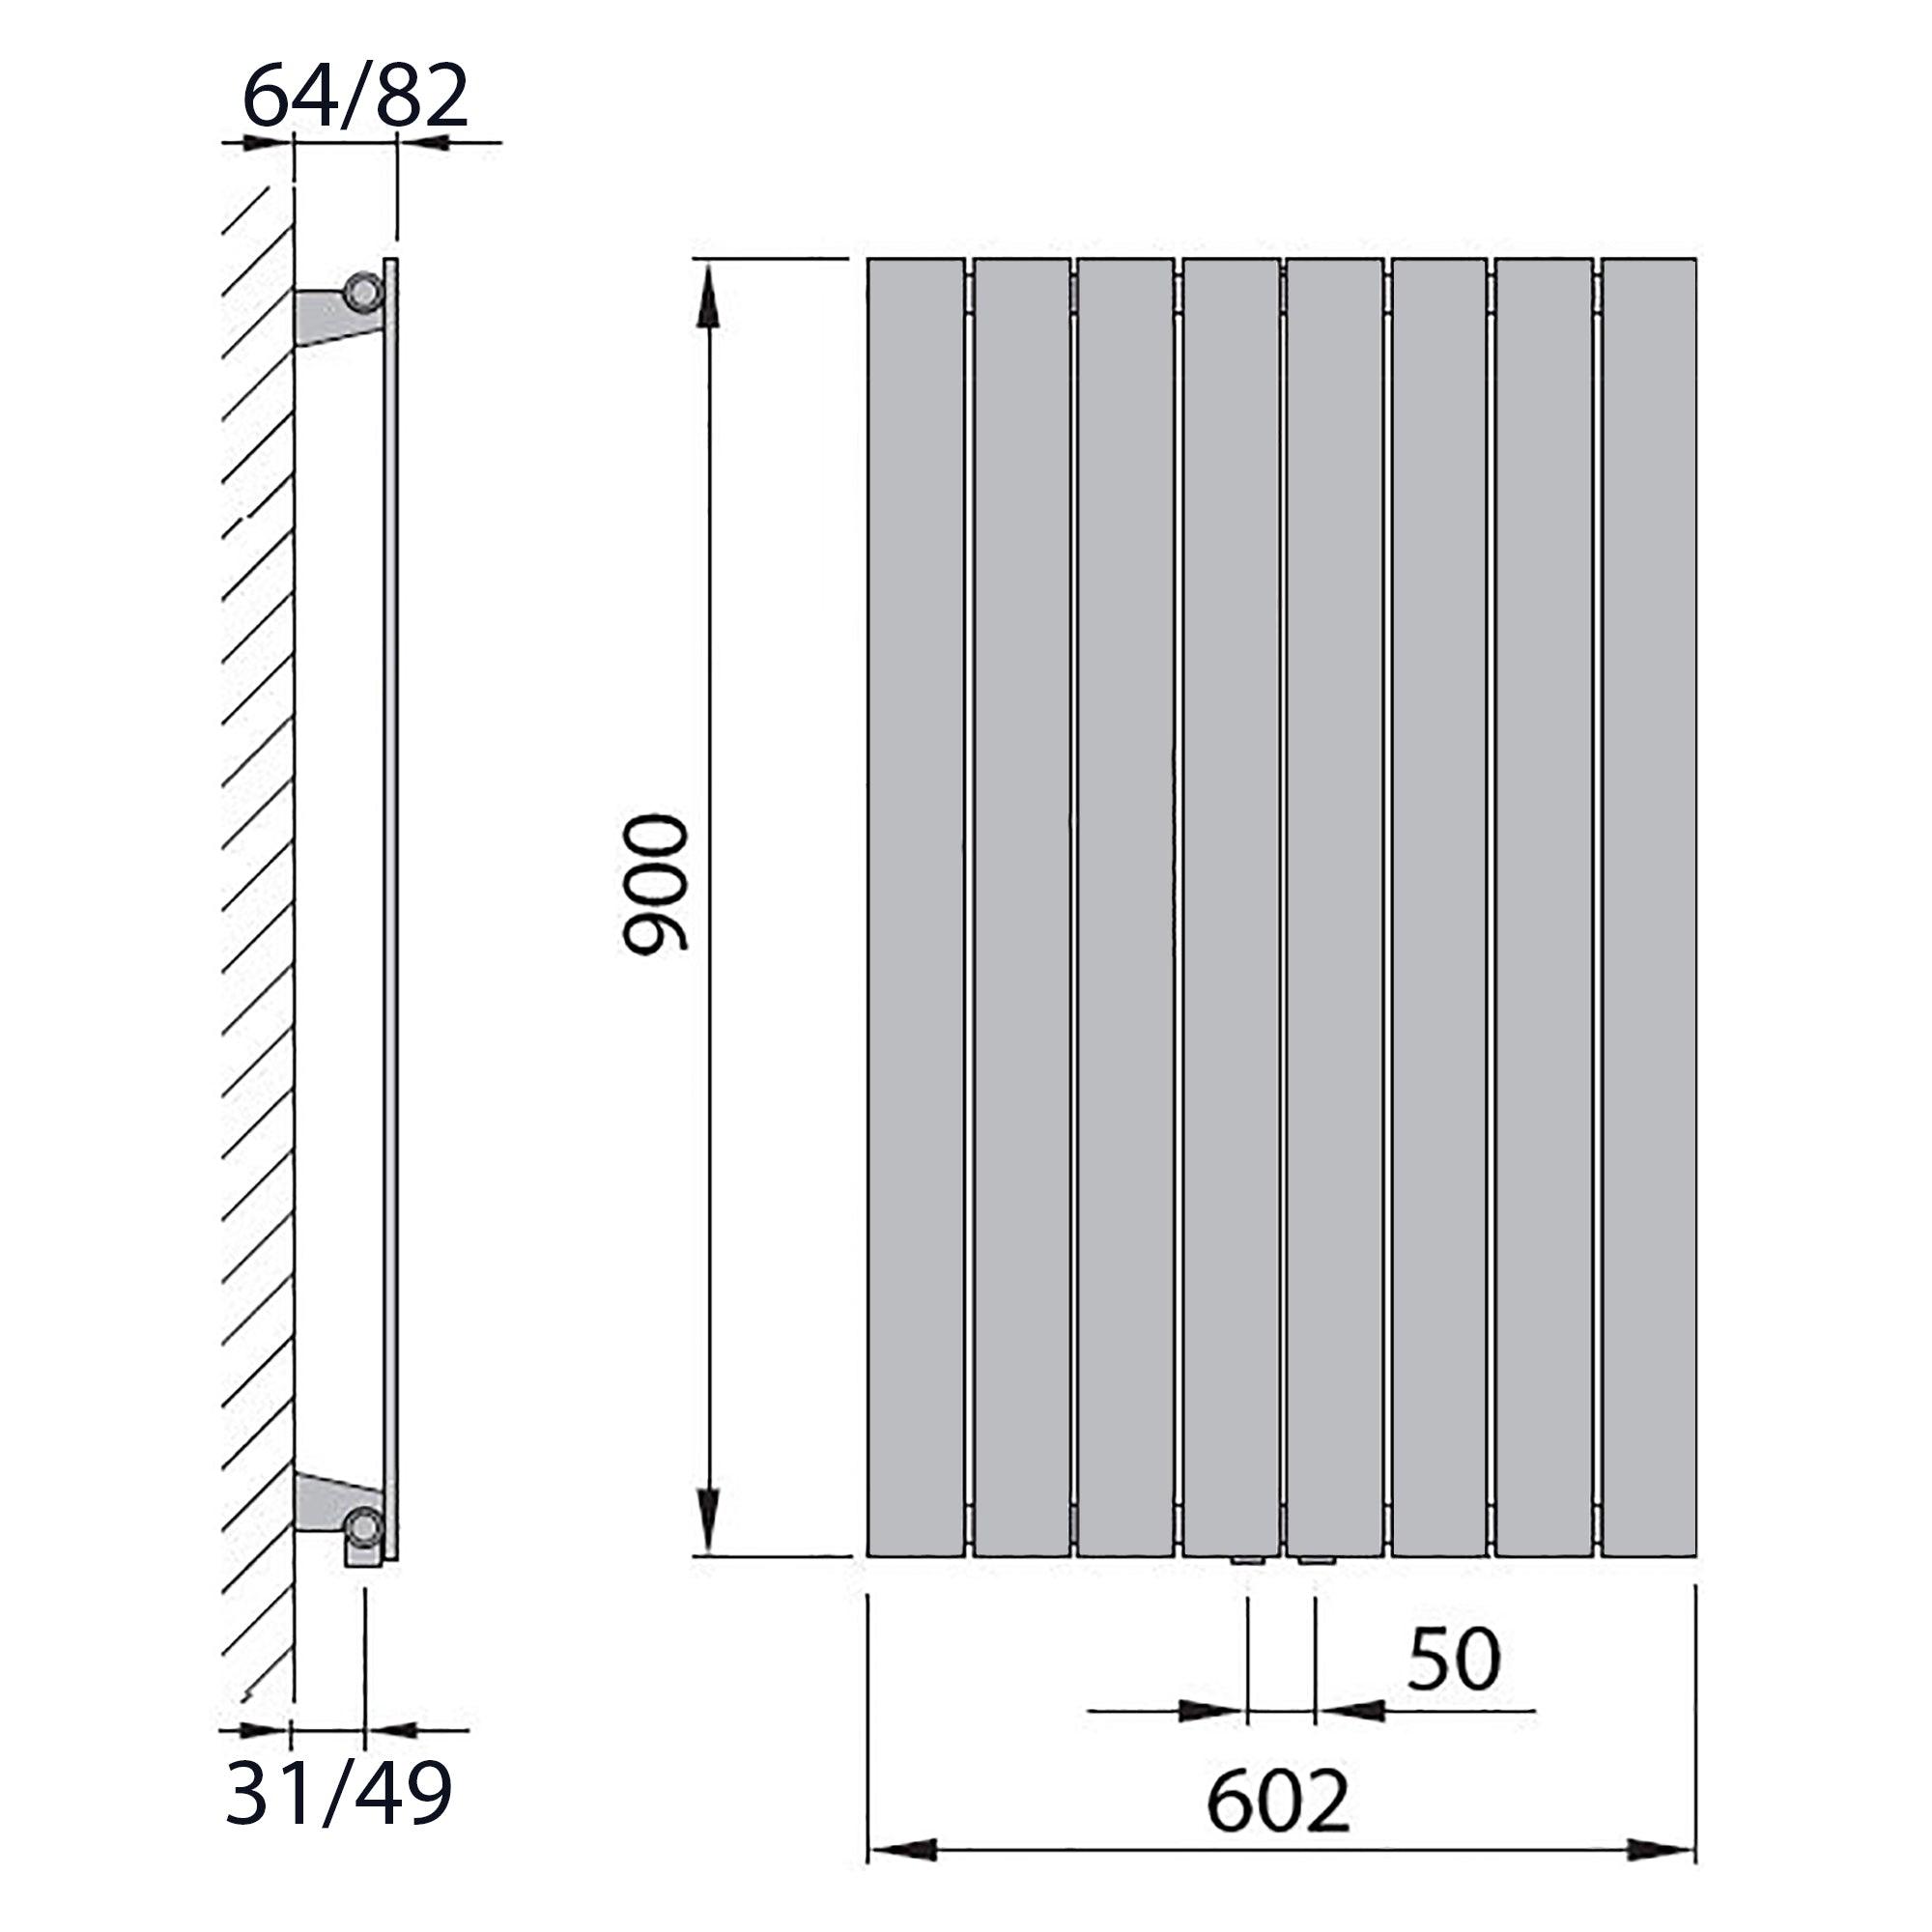 Design Paneelheizkörper vertikal 900 x 602 anthrazit Heizkörper Badheizkörper flach Badezimmer Heizung technische Zeichnung - heizkoerper.shop